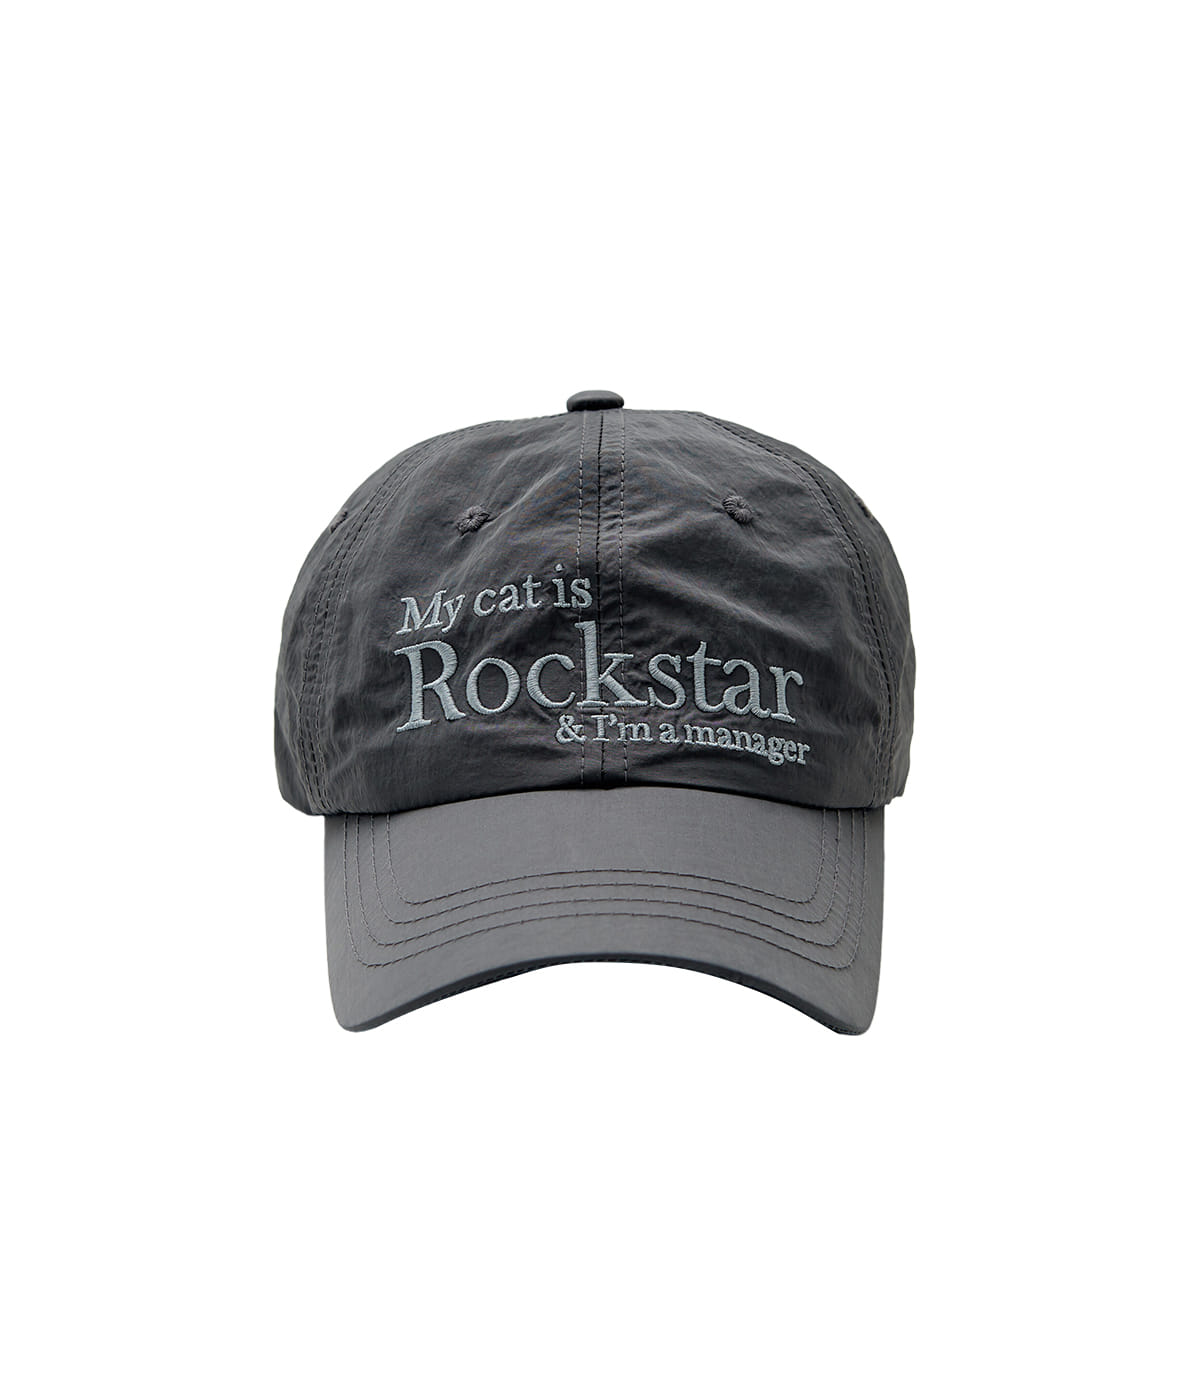 Rockstar cat cap (Charcoal)- 2월 초 발송예정